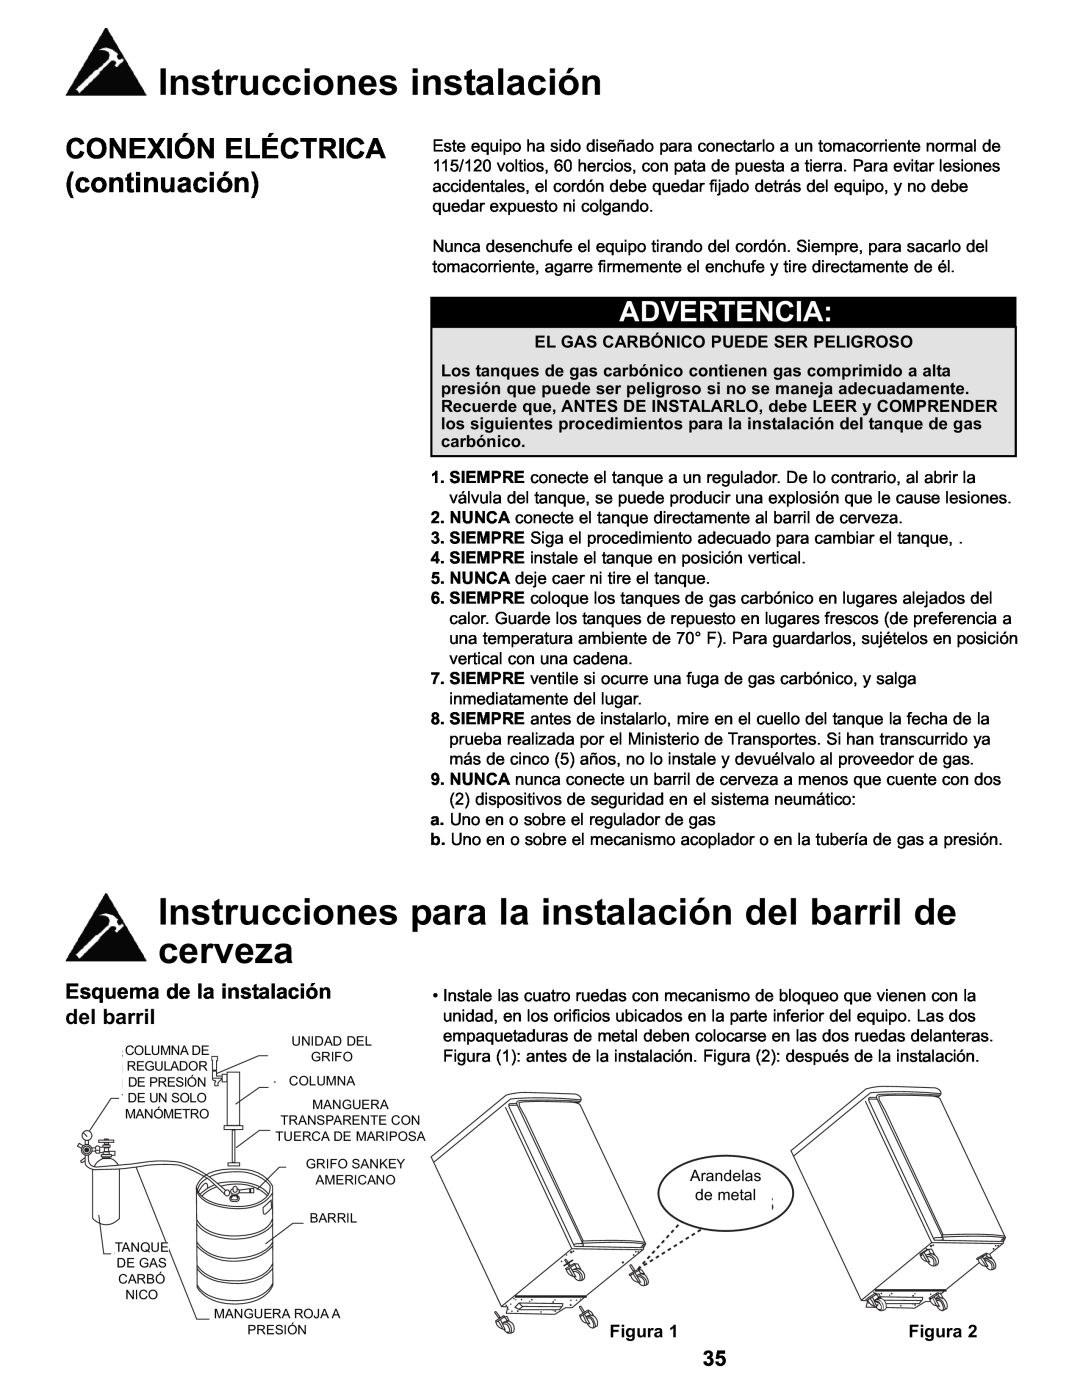 Danby DKC146SLDB Instrucciones para la instalación del barril de cerveza, CONEXIÓN ELÉCTRICA continuación, Figura, Washers 